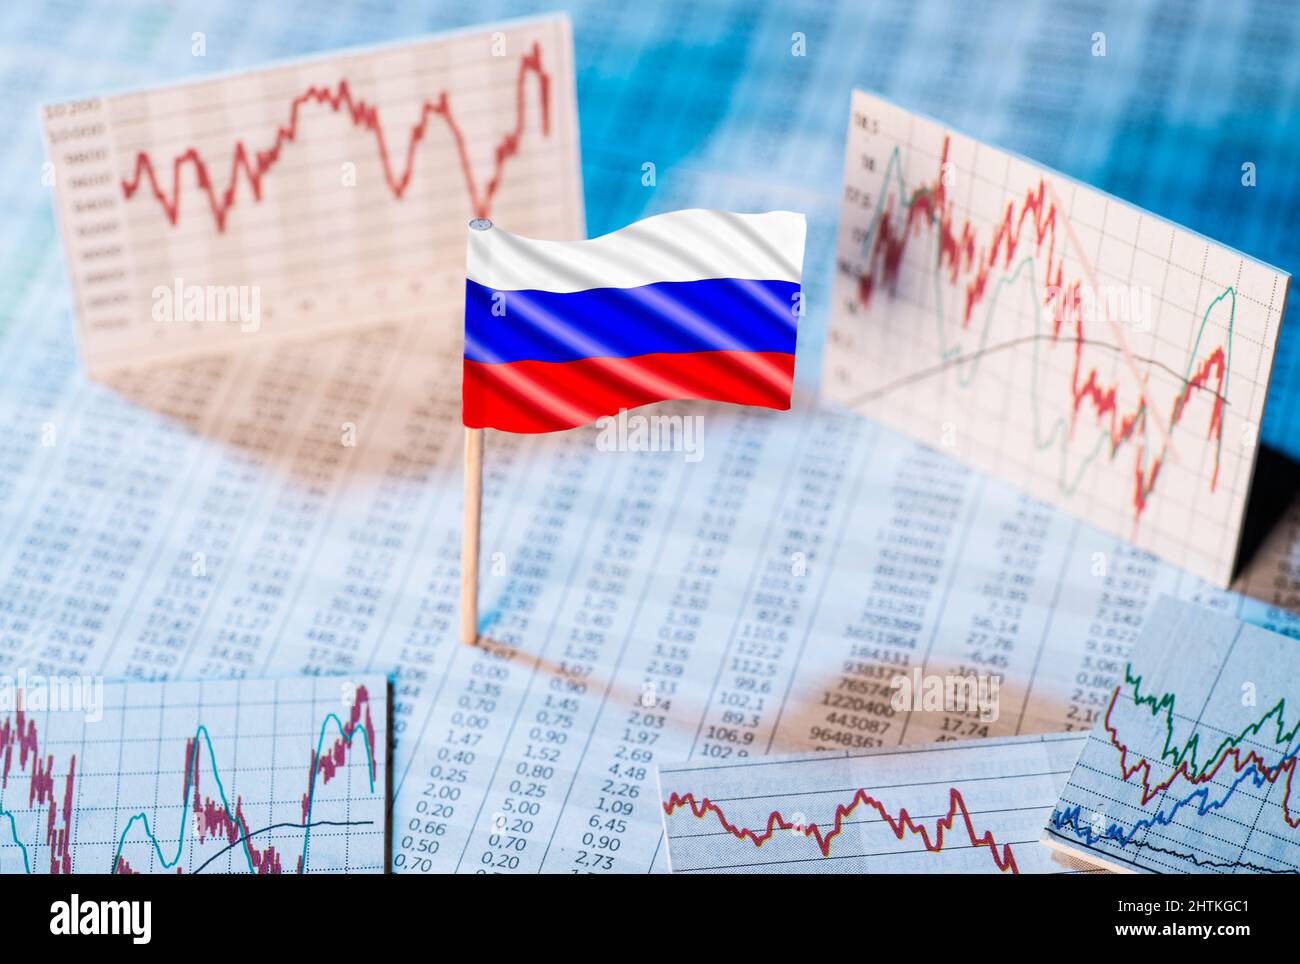 Bandiera russa con tabelle dei tassi di cambio e grafici di sviluppo economico Foto Stock